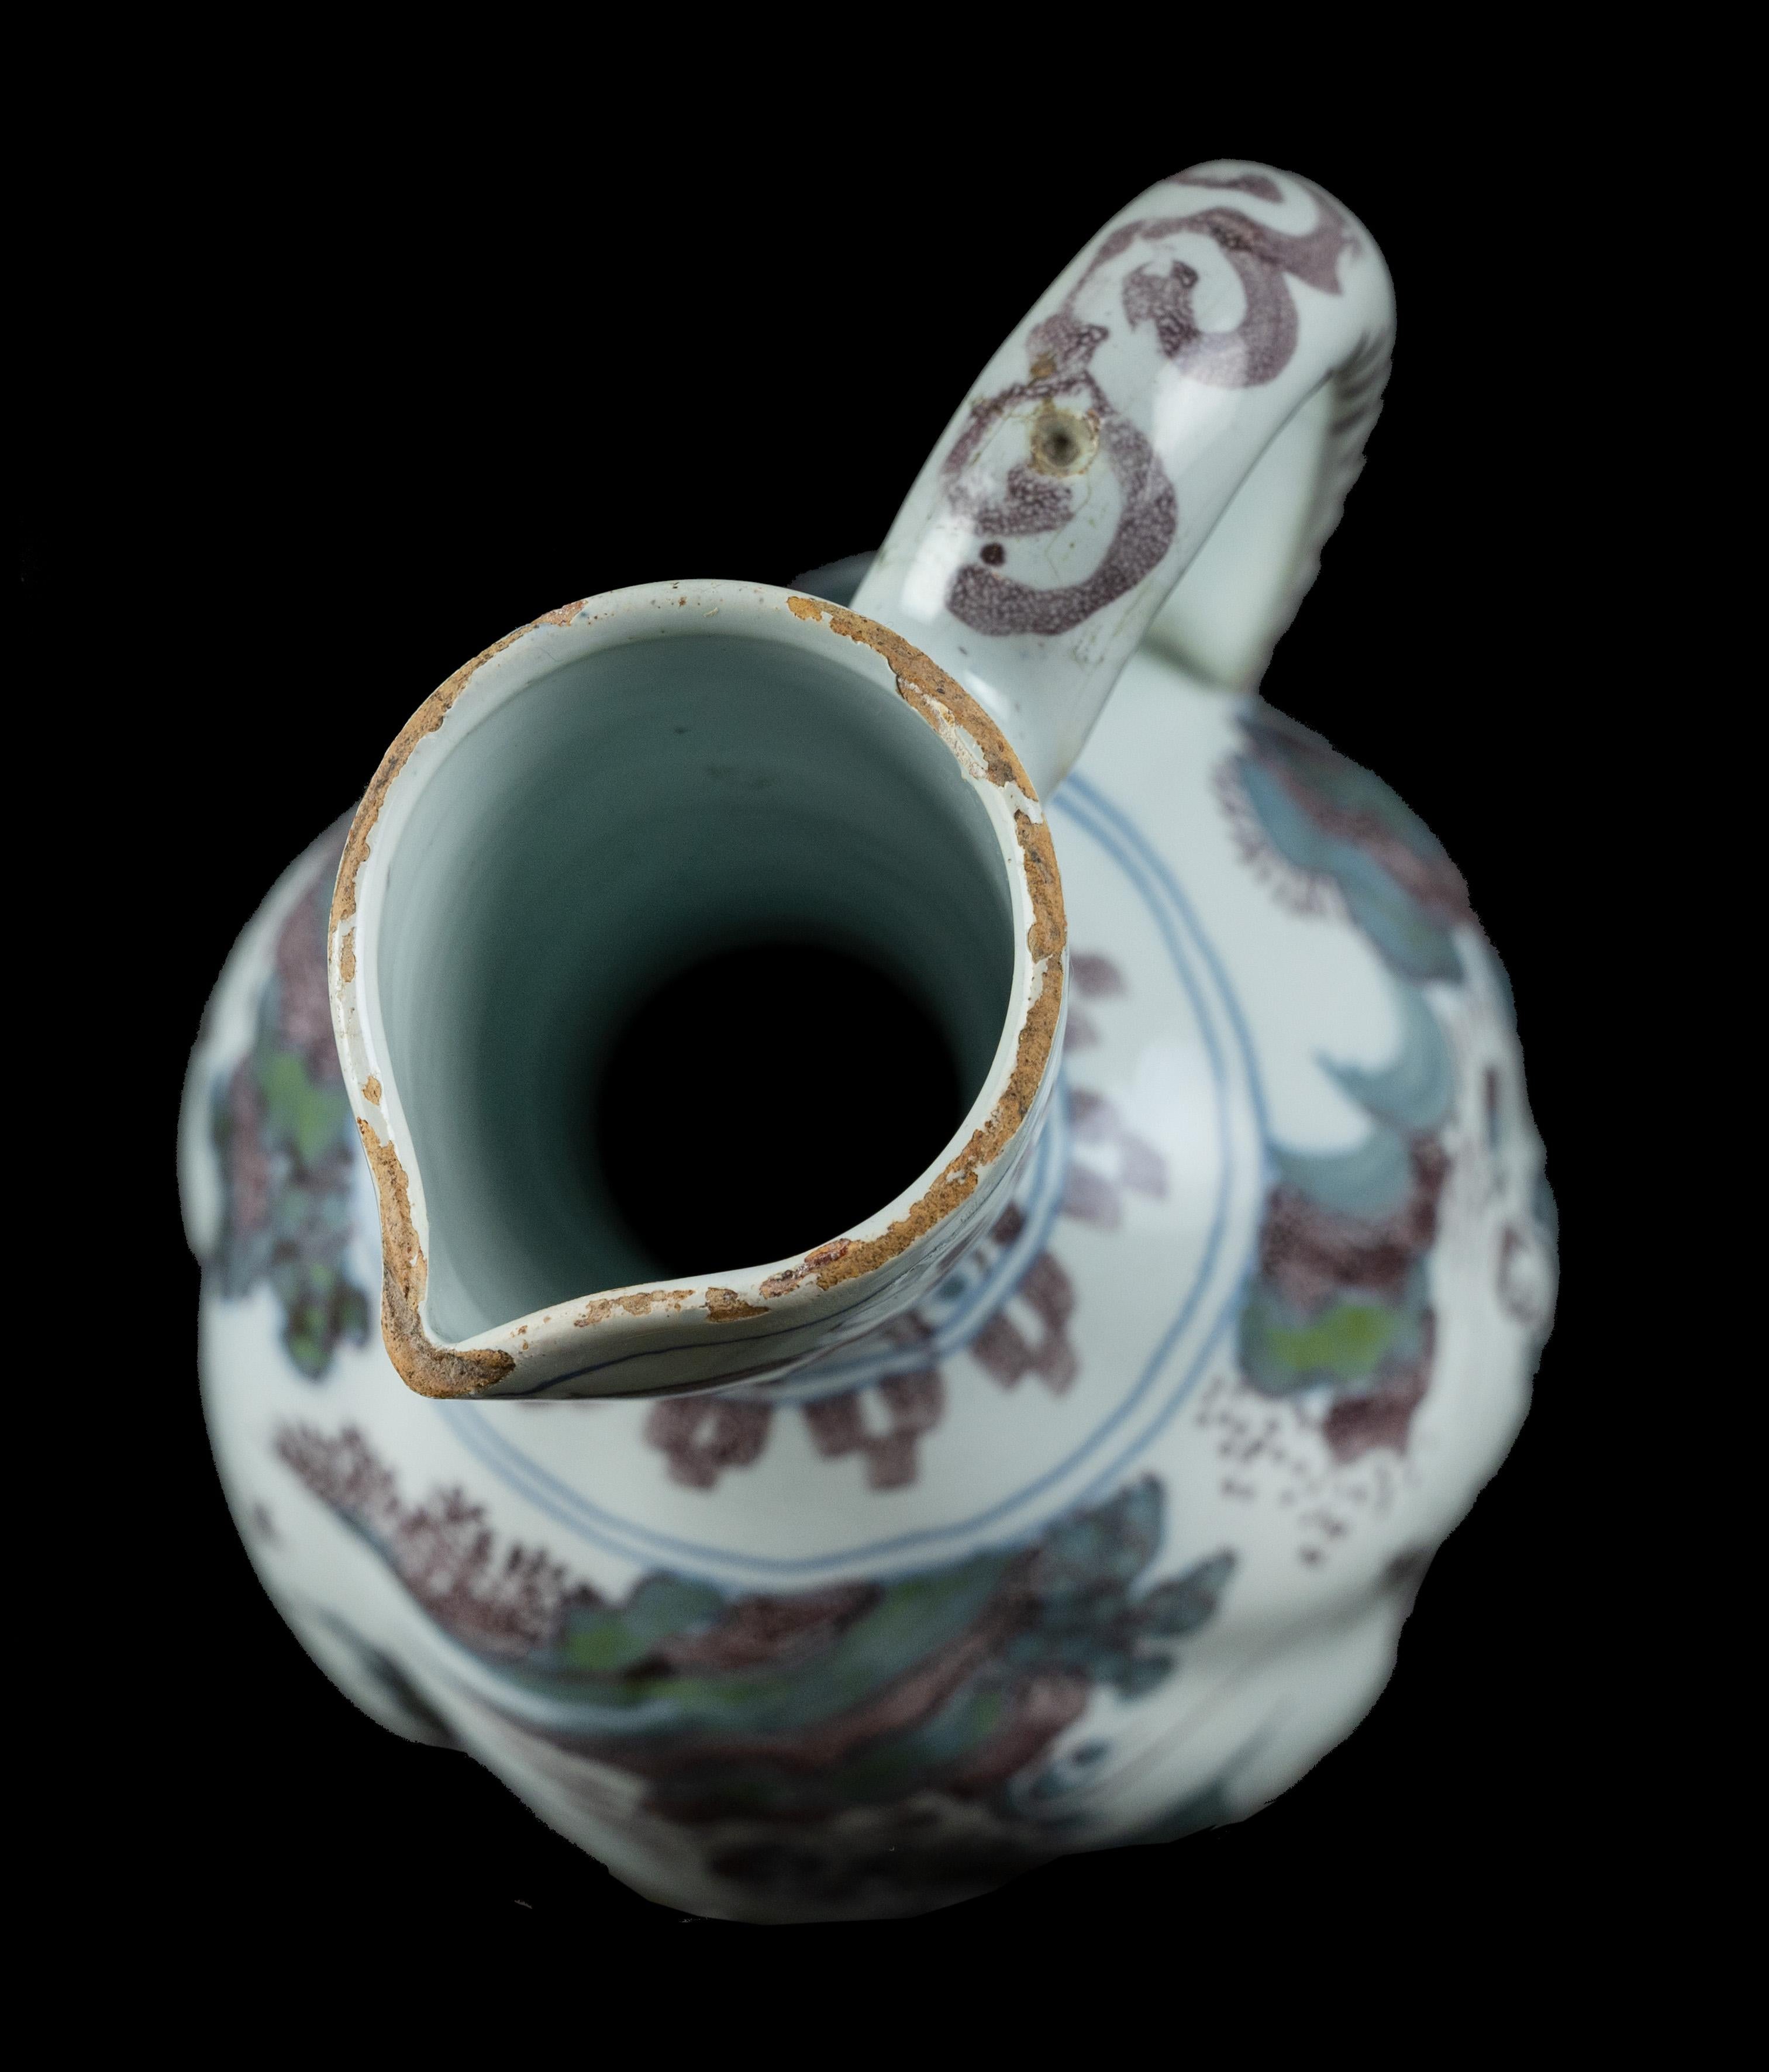 Verseuse à vin en chinoiserie polychrome. Delft, vers 1680
La cruche à vin polychrome a un corps ovoïde et tourné sur un pied bas et étalé, un col conique avec un bec et une poignée avec une finition en volute. La cruche est peinte en bleu, violet